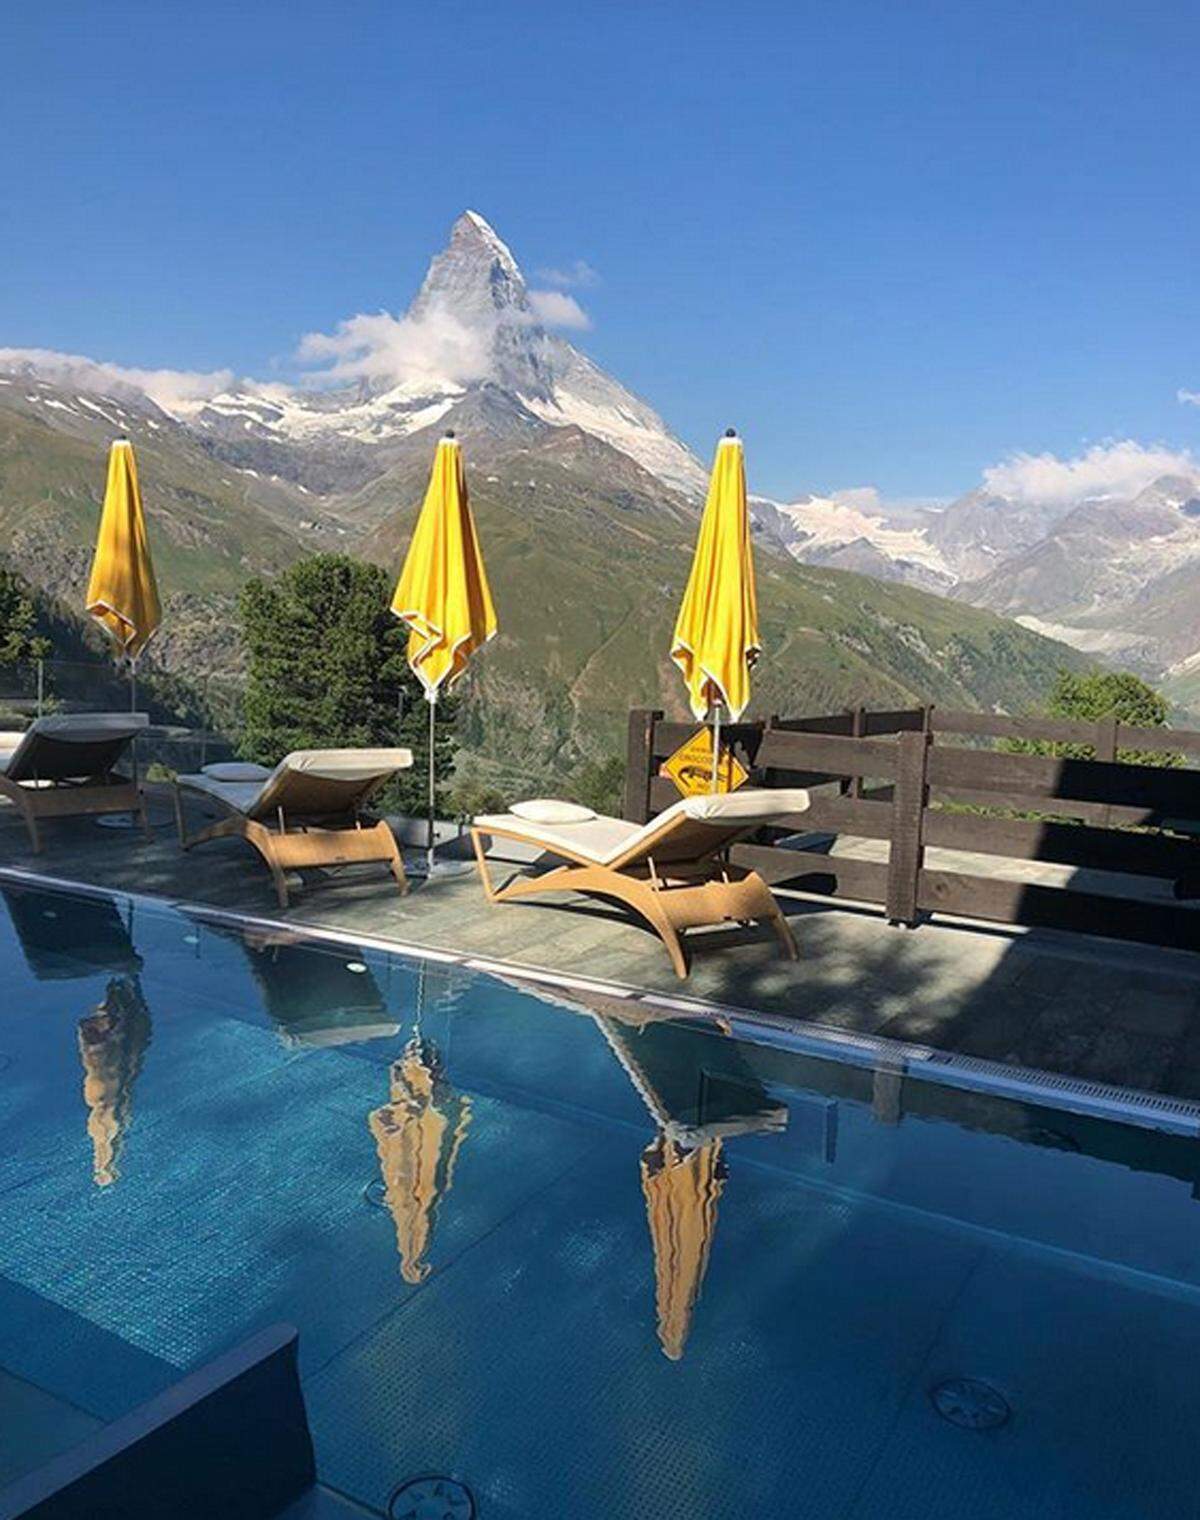 Der Pool des Schweizer Hotels Riffelalp ist zwar nur acht mal vier Meter groß, er gilt aber als höchstgelegener Außenpool Europas. Denn es befindet sich auf über 2200 Metern mit Blick aufs Matterhorn.